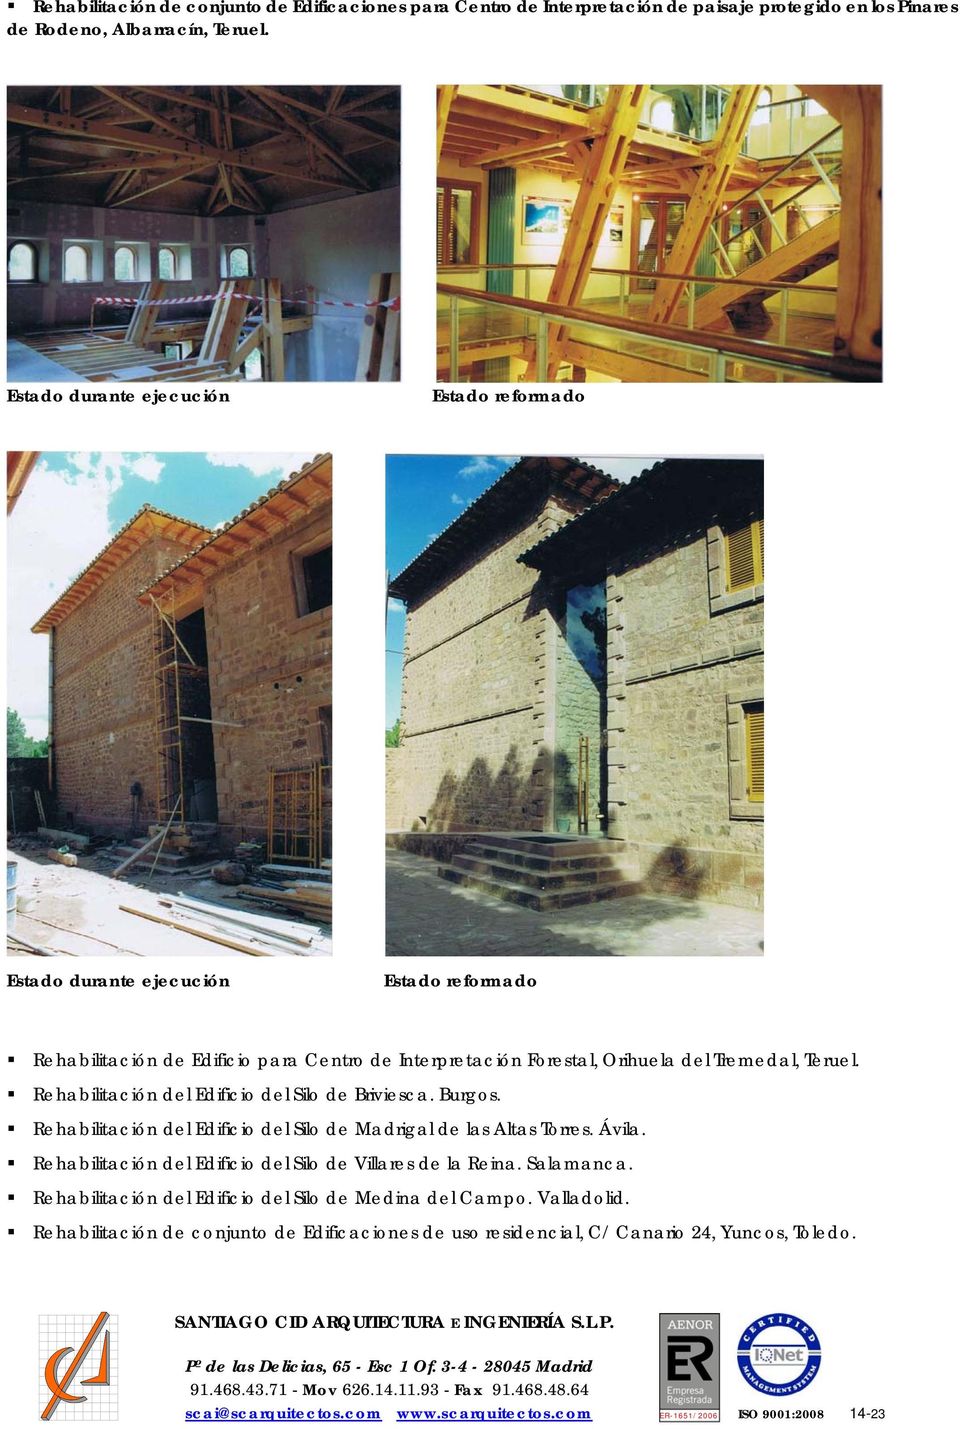 Rehabilitación del Edificio del Silo de Briviesca. Burgos. Rehabilitación del Edificio del Silo de Madrigal de las Altas Torres. Ávila.